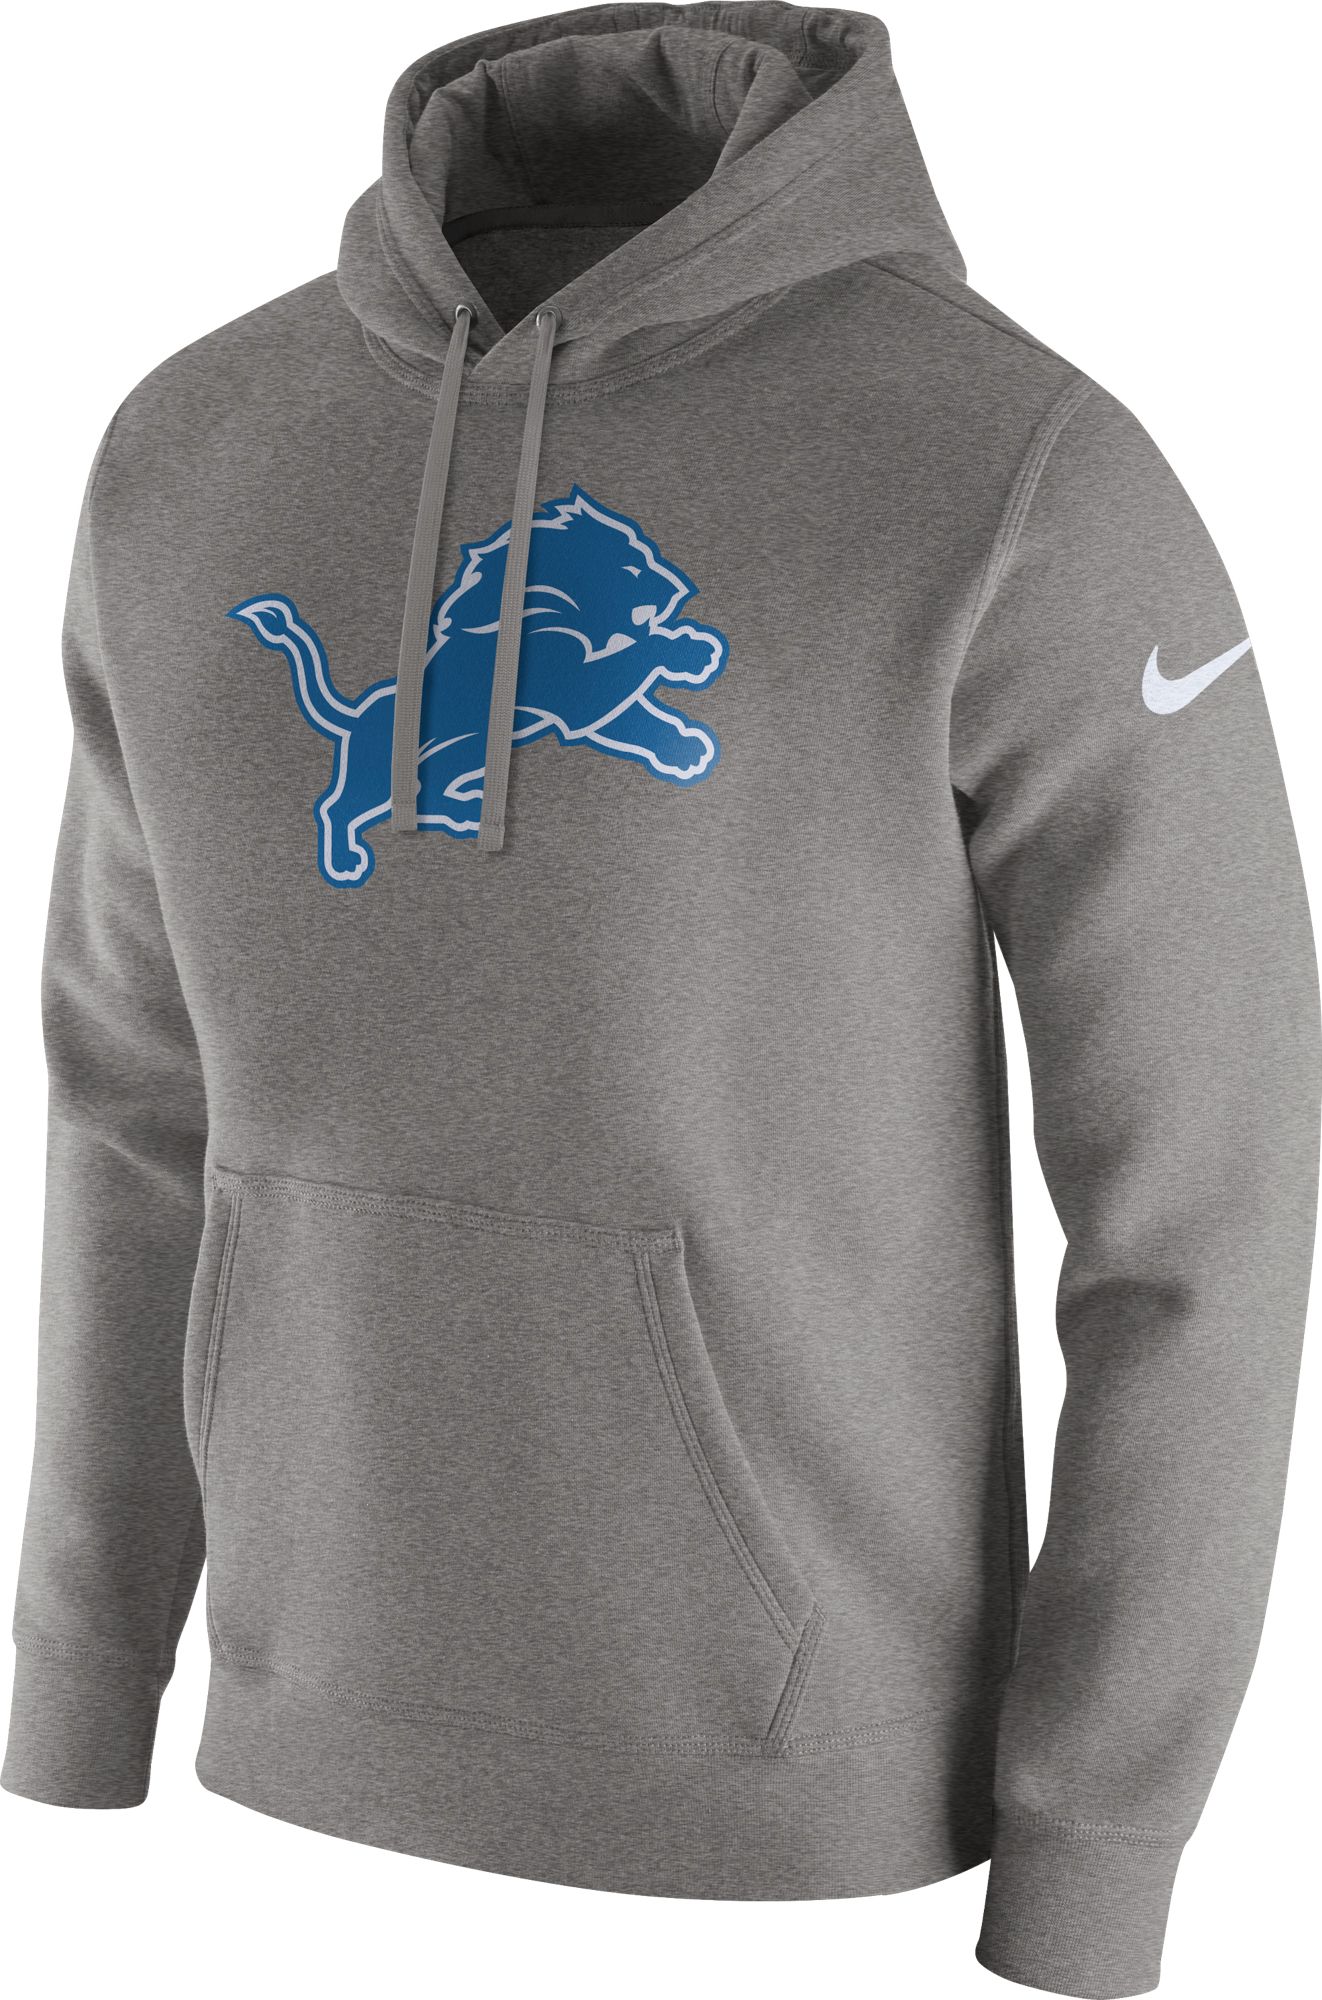 detroit lions zip up sweatshirt